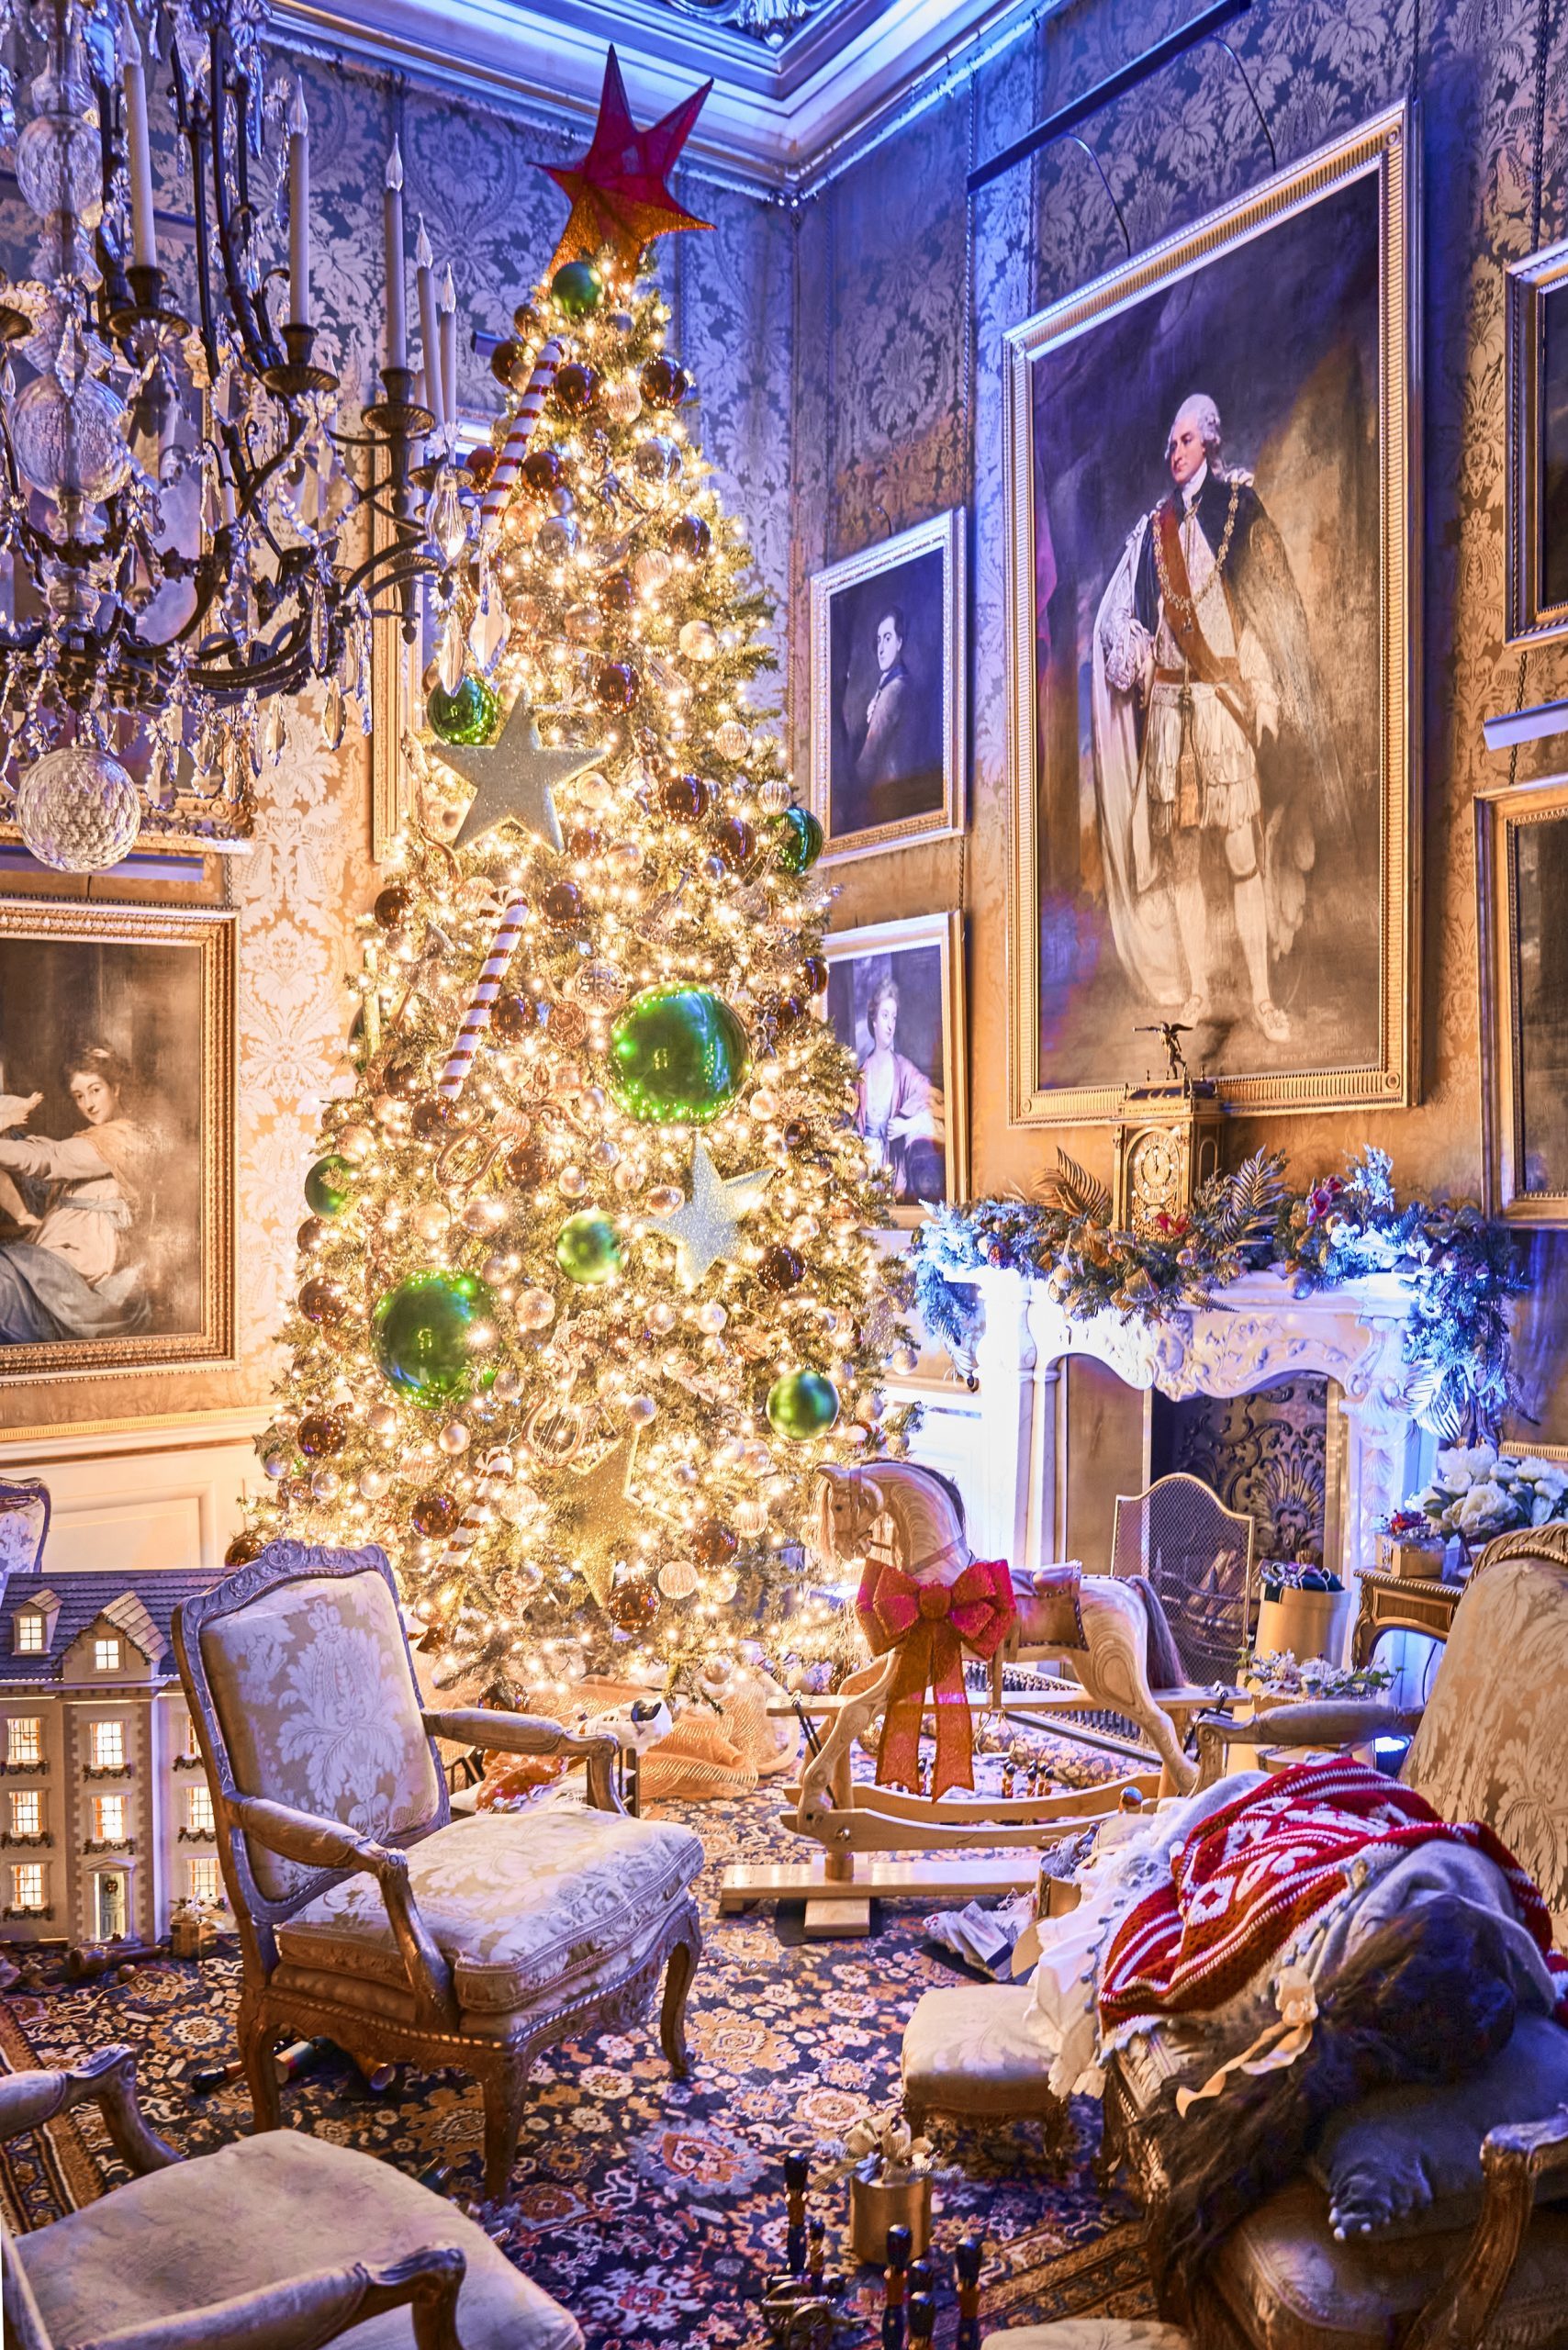 Documental Decoraciones navideñas increíbles